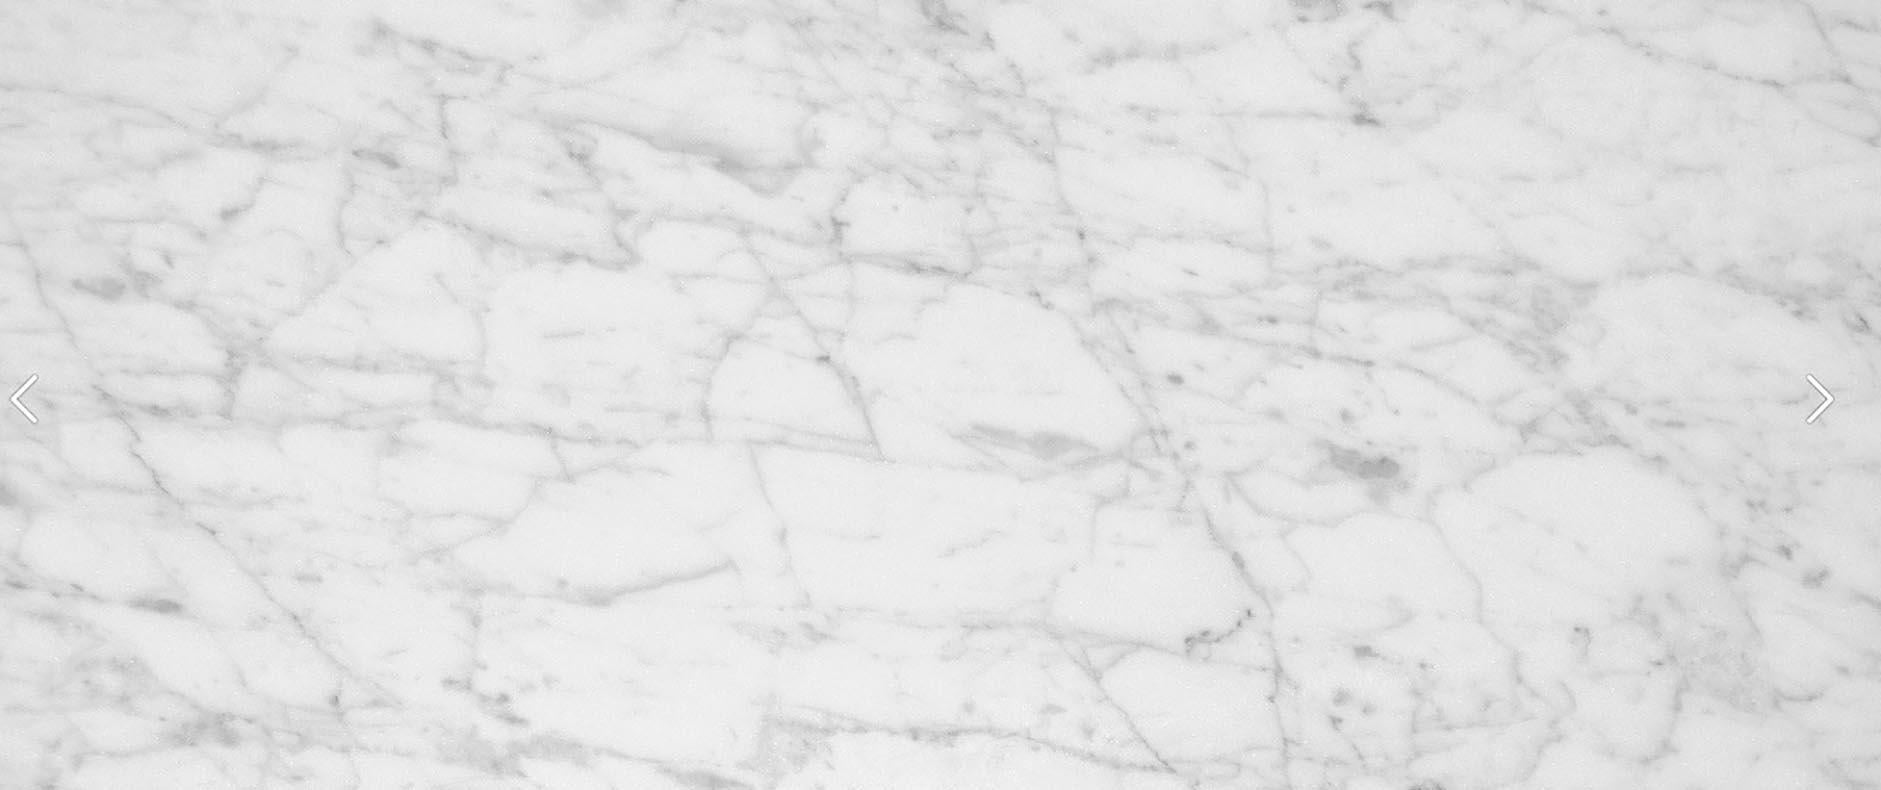 Name: INTARSIA FOLD
Couchtisch aus Marmor, entworfen von R. Littel
Größe: Cm 100 x 100 x 37.5H
MATERIALIEN: Pietra serena + Nero del Belgio + Bianco Carrara + Rosso Francia.
 